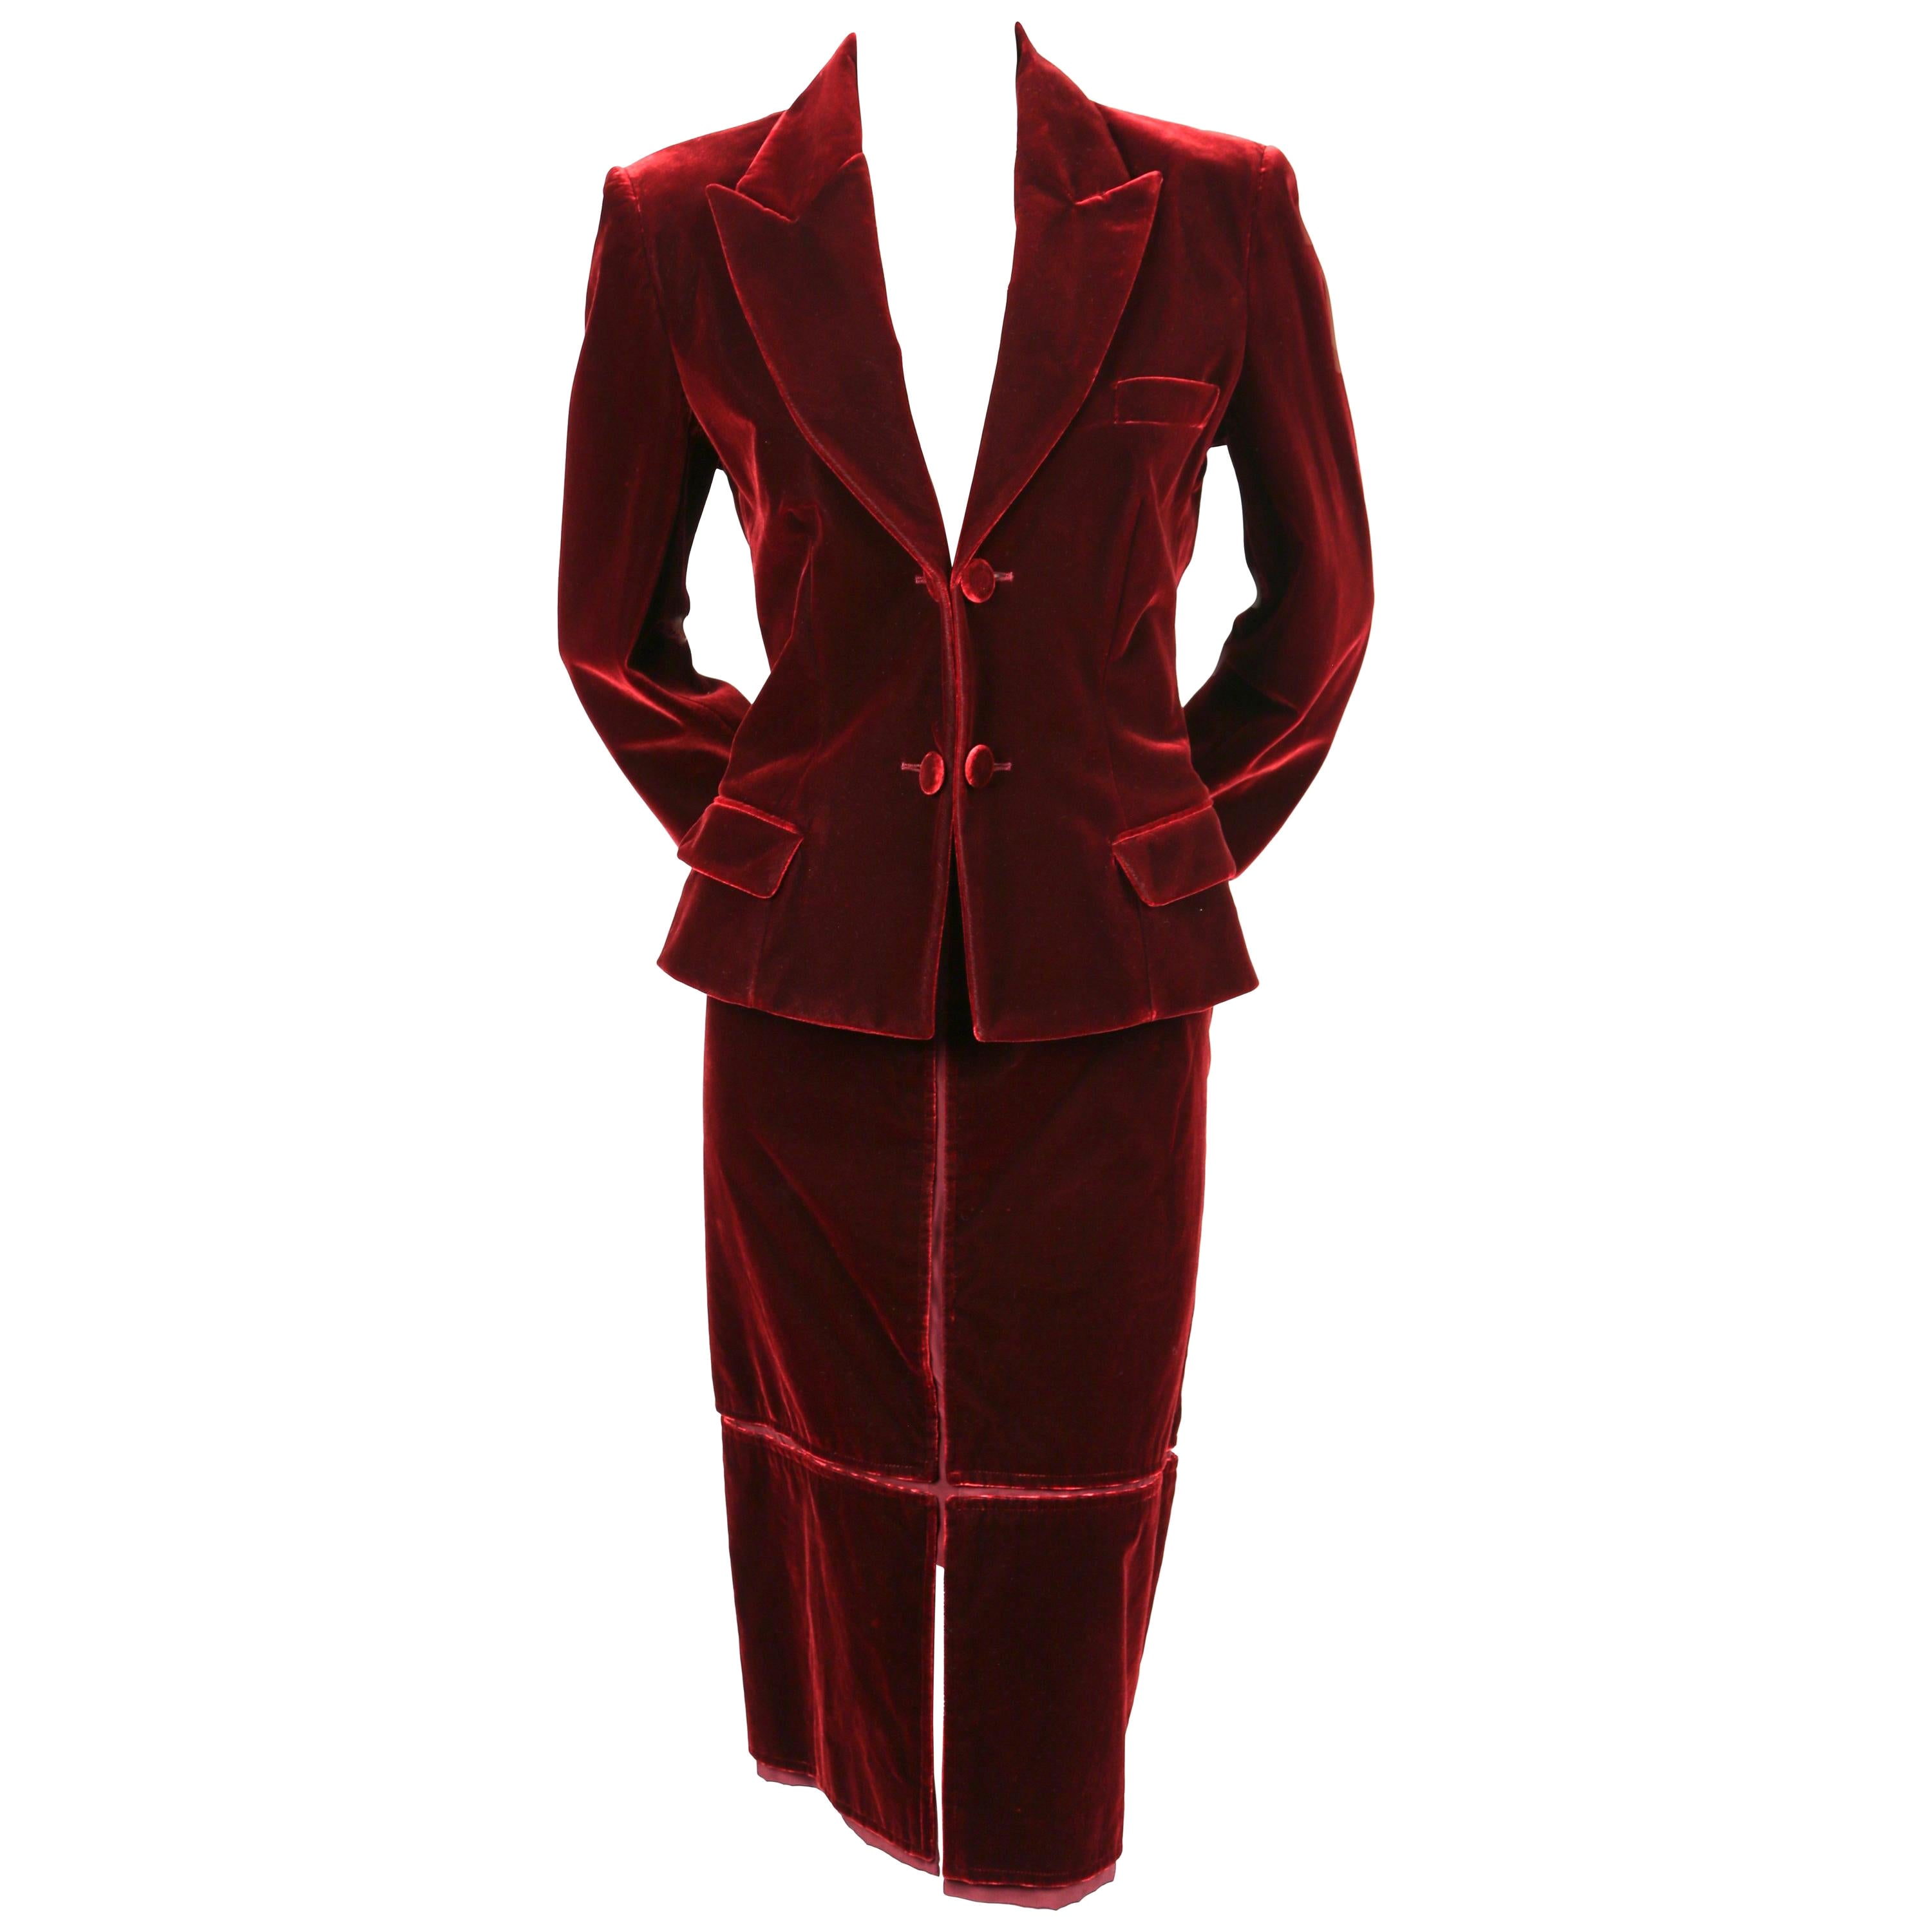 2002 TOM FORD for YVES SAINT LAURENT burgundy velvet runway suit For Sale